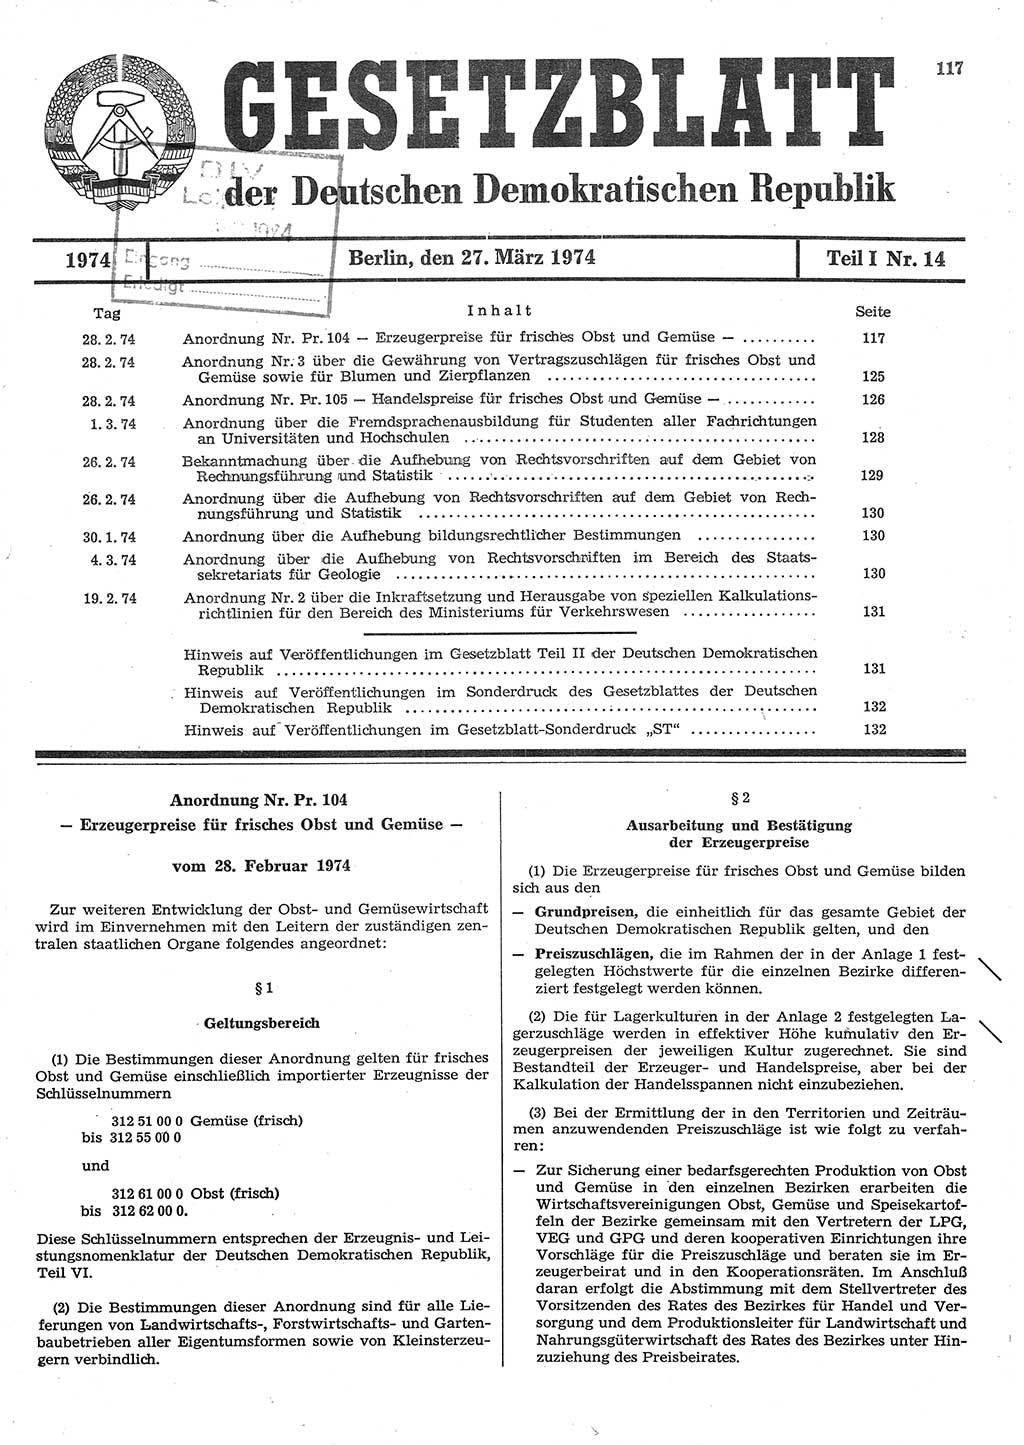 Gesetzblatt (GBl.) der Deutschen Demokratischen Republik (DDR) Teil Ⅰ 1974, Seite 117 (GBl. DDR Ⅰ 1974, S. 117)